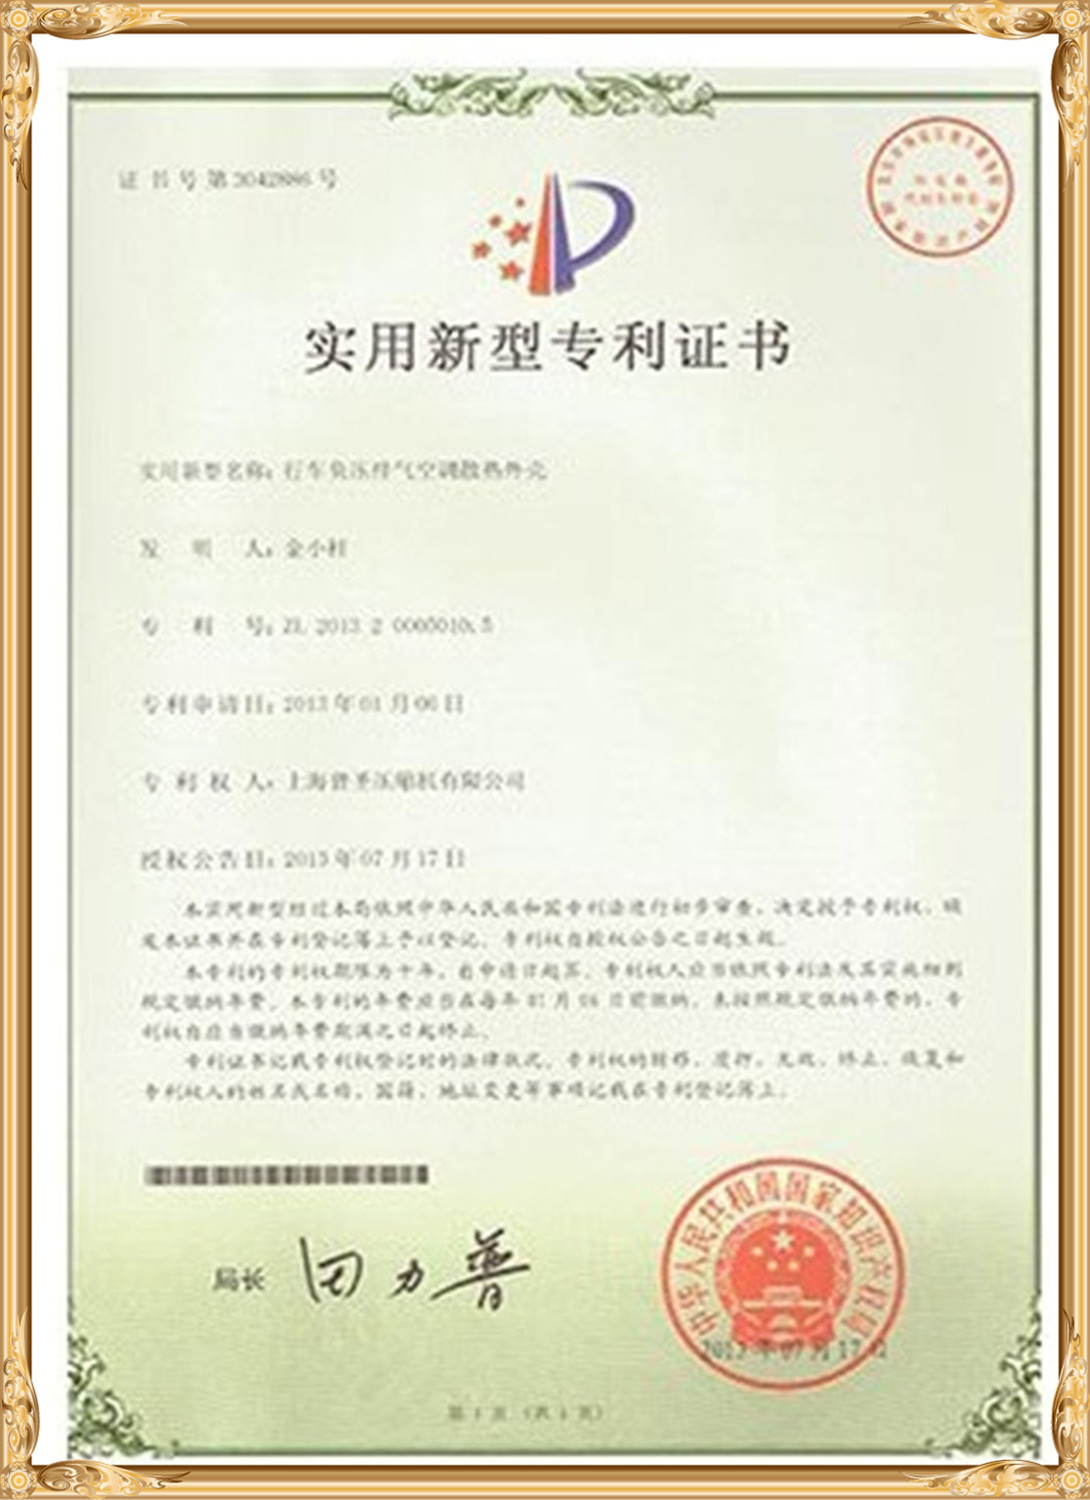 Teste și certificate (8)